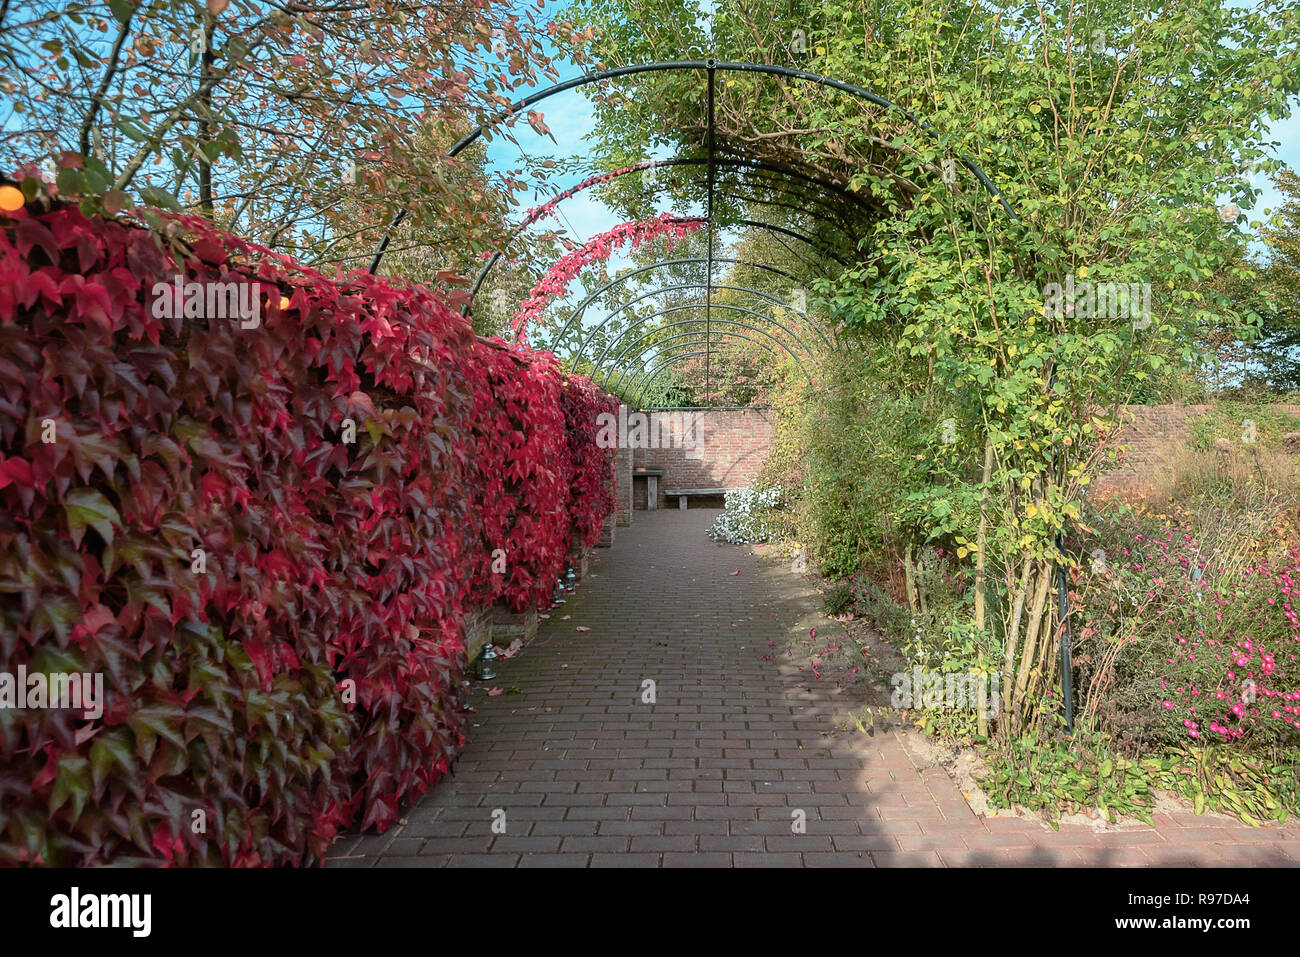 Mur envahi par un réducteur dans de belles couleurs d'automne dans un jardin quelque part dans les Pays-Bas Banque D'Images